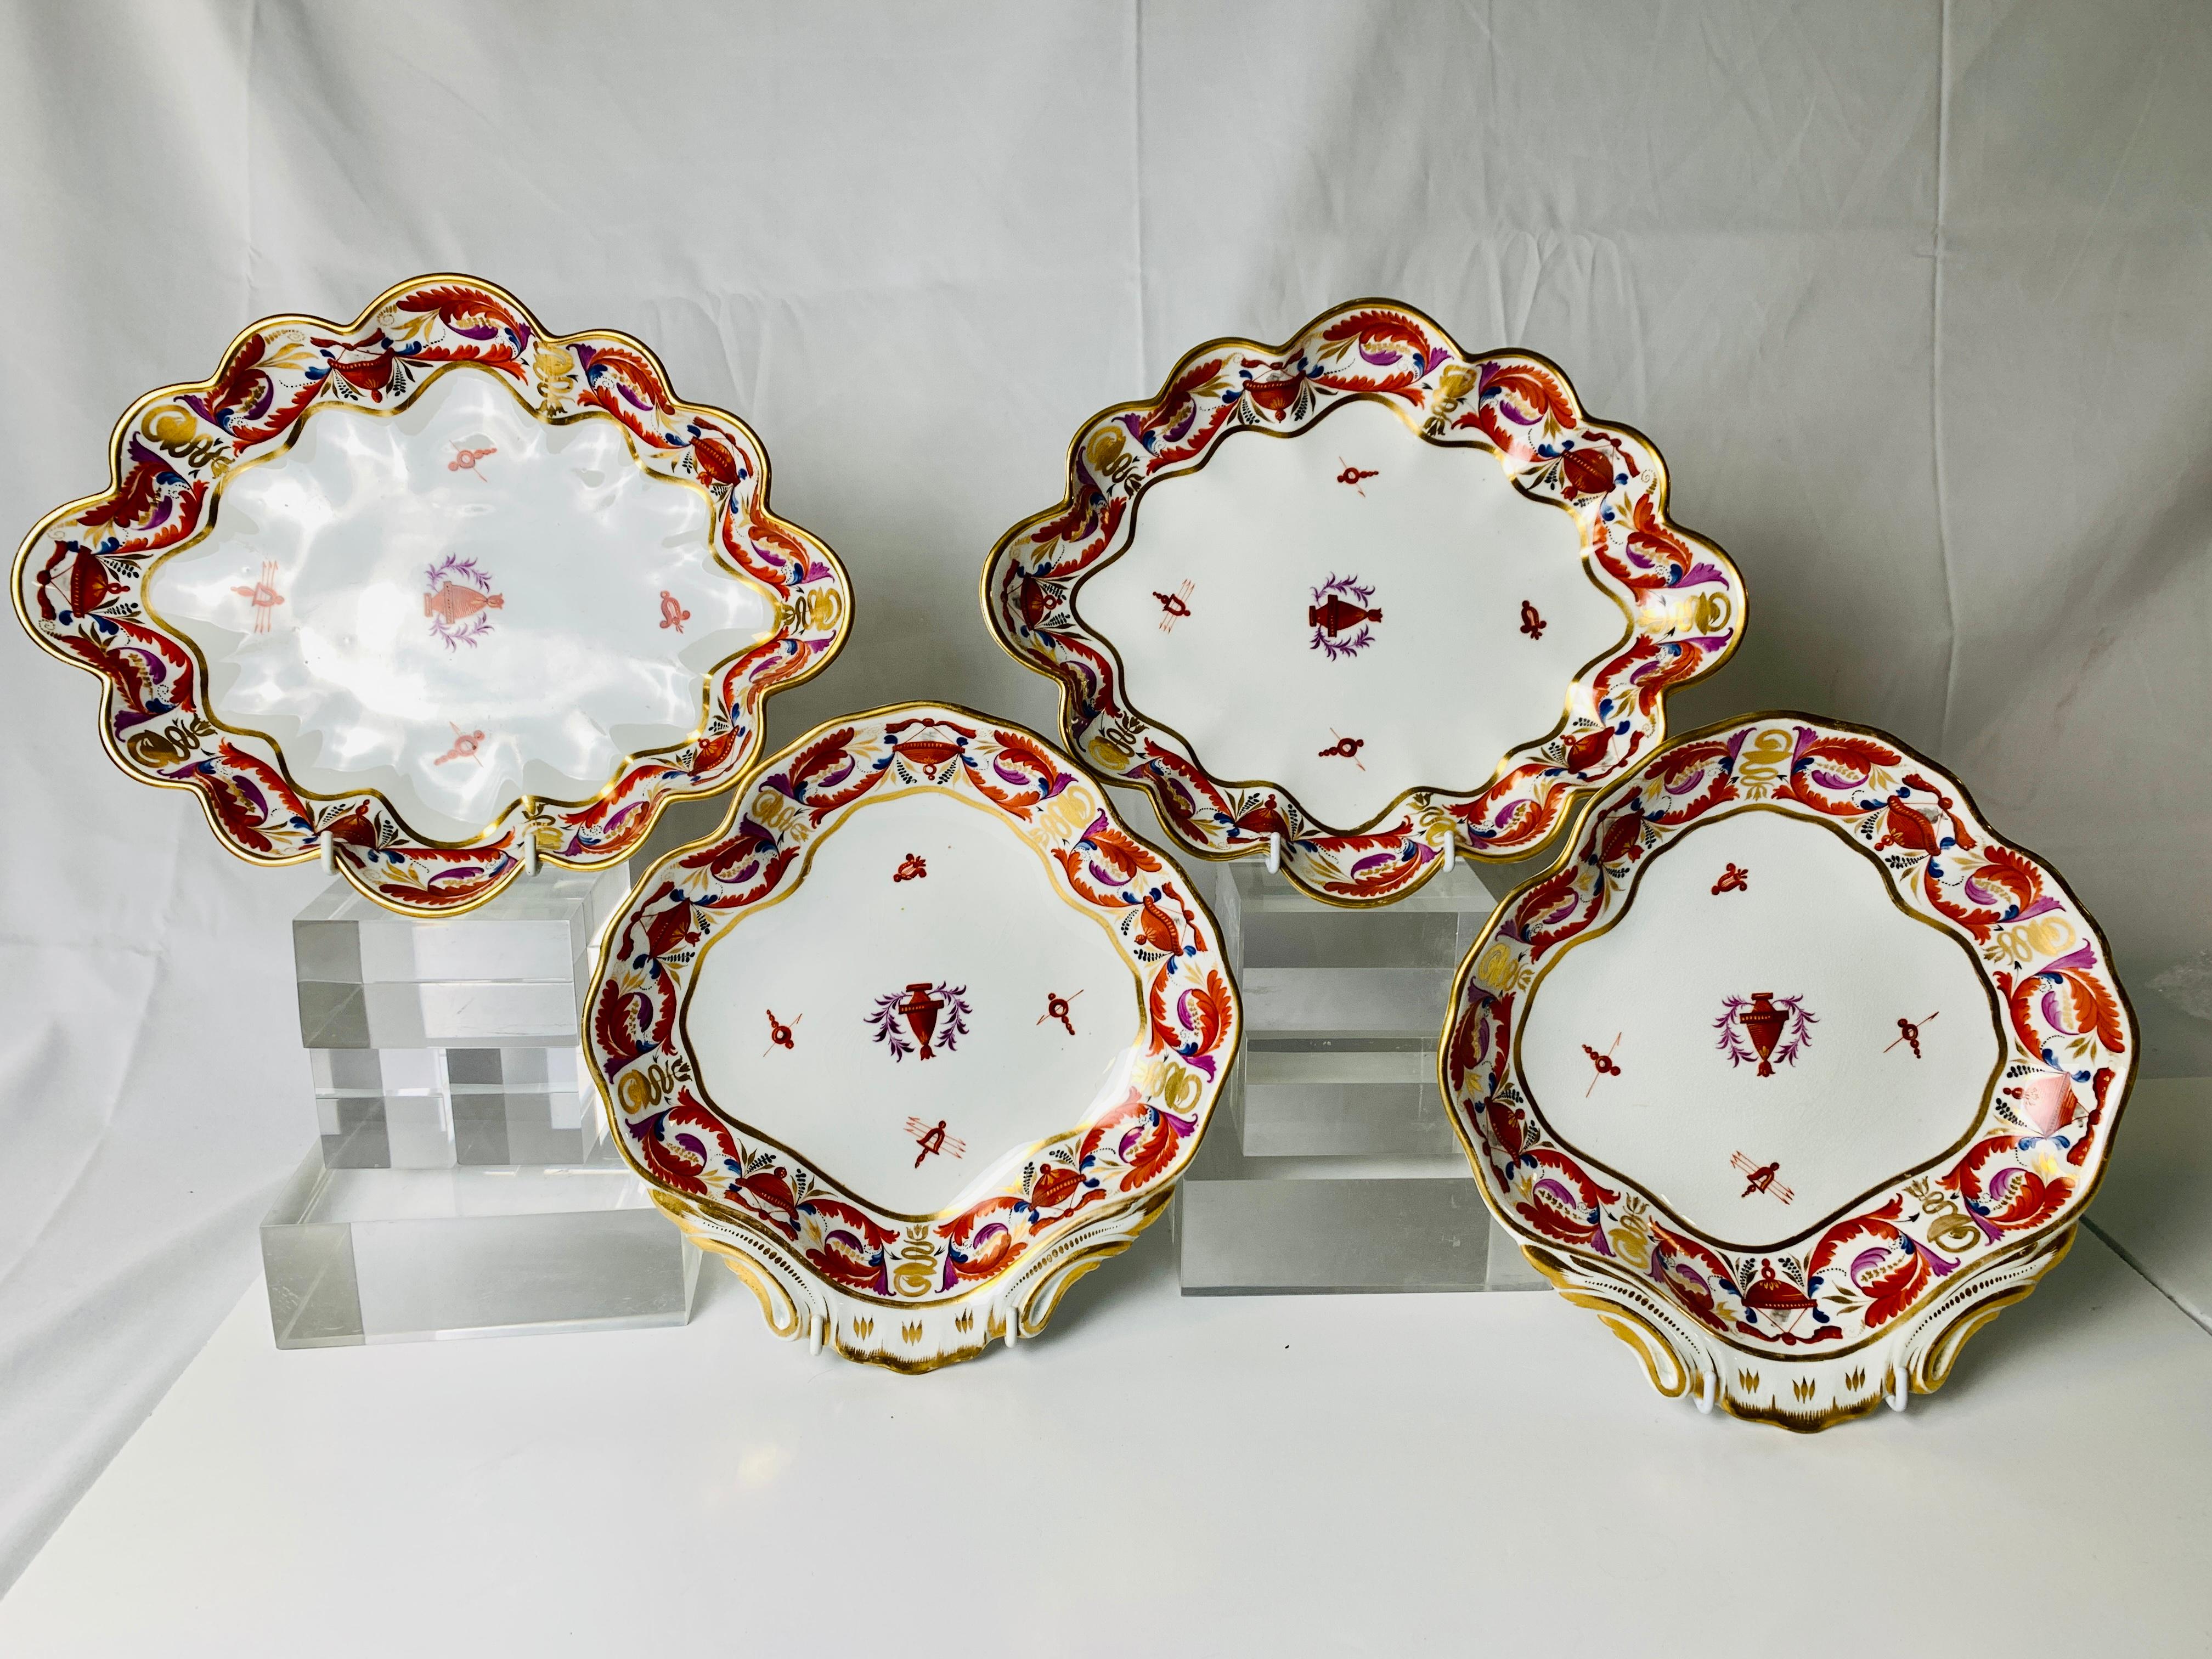 Ce groupe de quatre plats en porcelaine de Derby a été peint à la main en Angleterre vers 1810. Un motif exquis de plumes enroulées et d'objets néoclassiques orne les bordures. Ce sont les combinaisons de couleurs qui rendent ces plats si